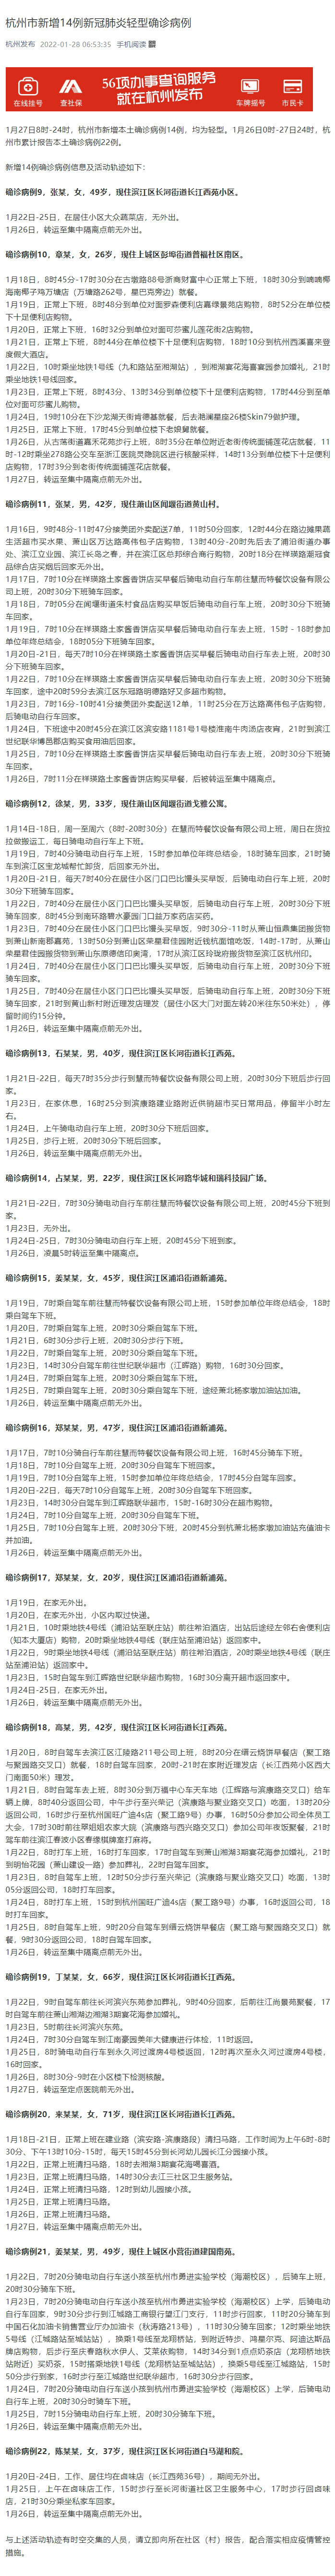 杭州疫情最新消息|杭州新增14例本土确诊 活动轨迹公布